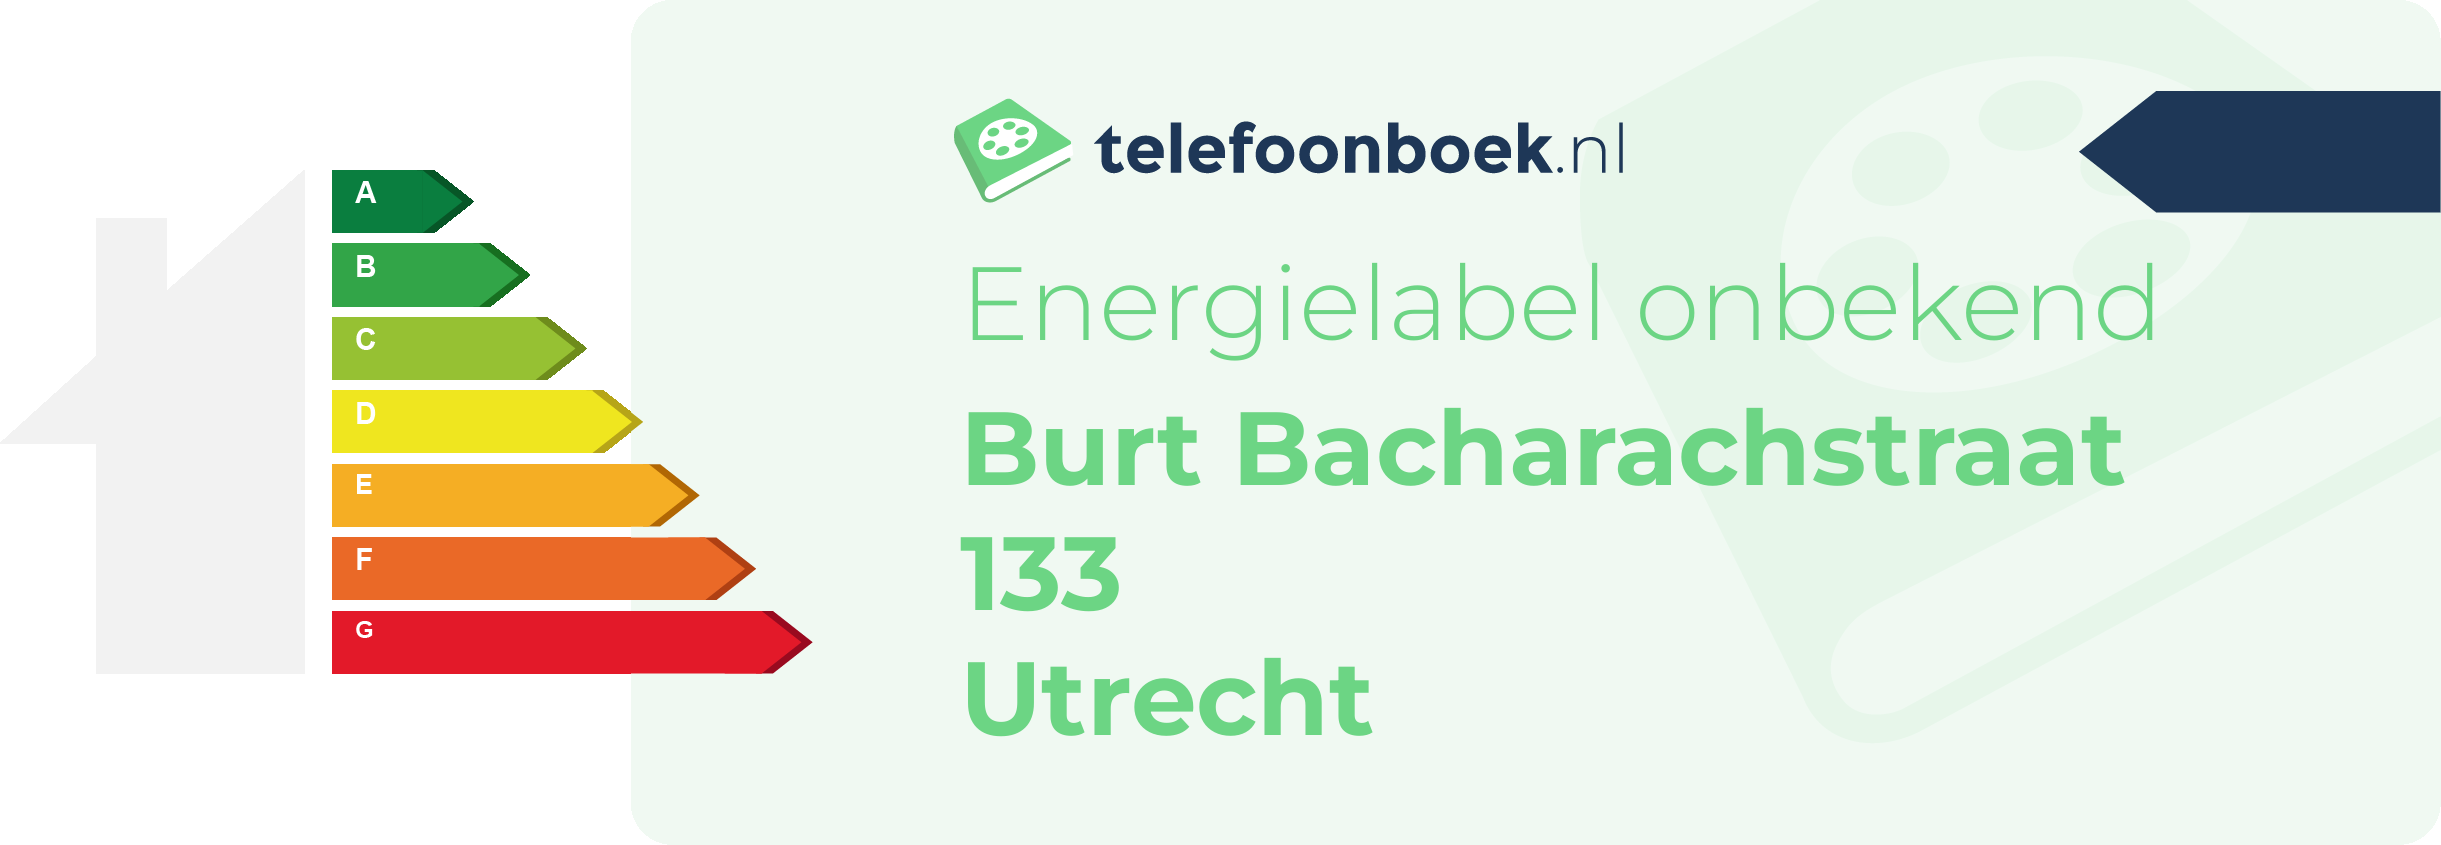 Energielabel Burt Bacharachstraat 133 Utrecht